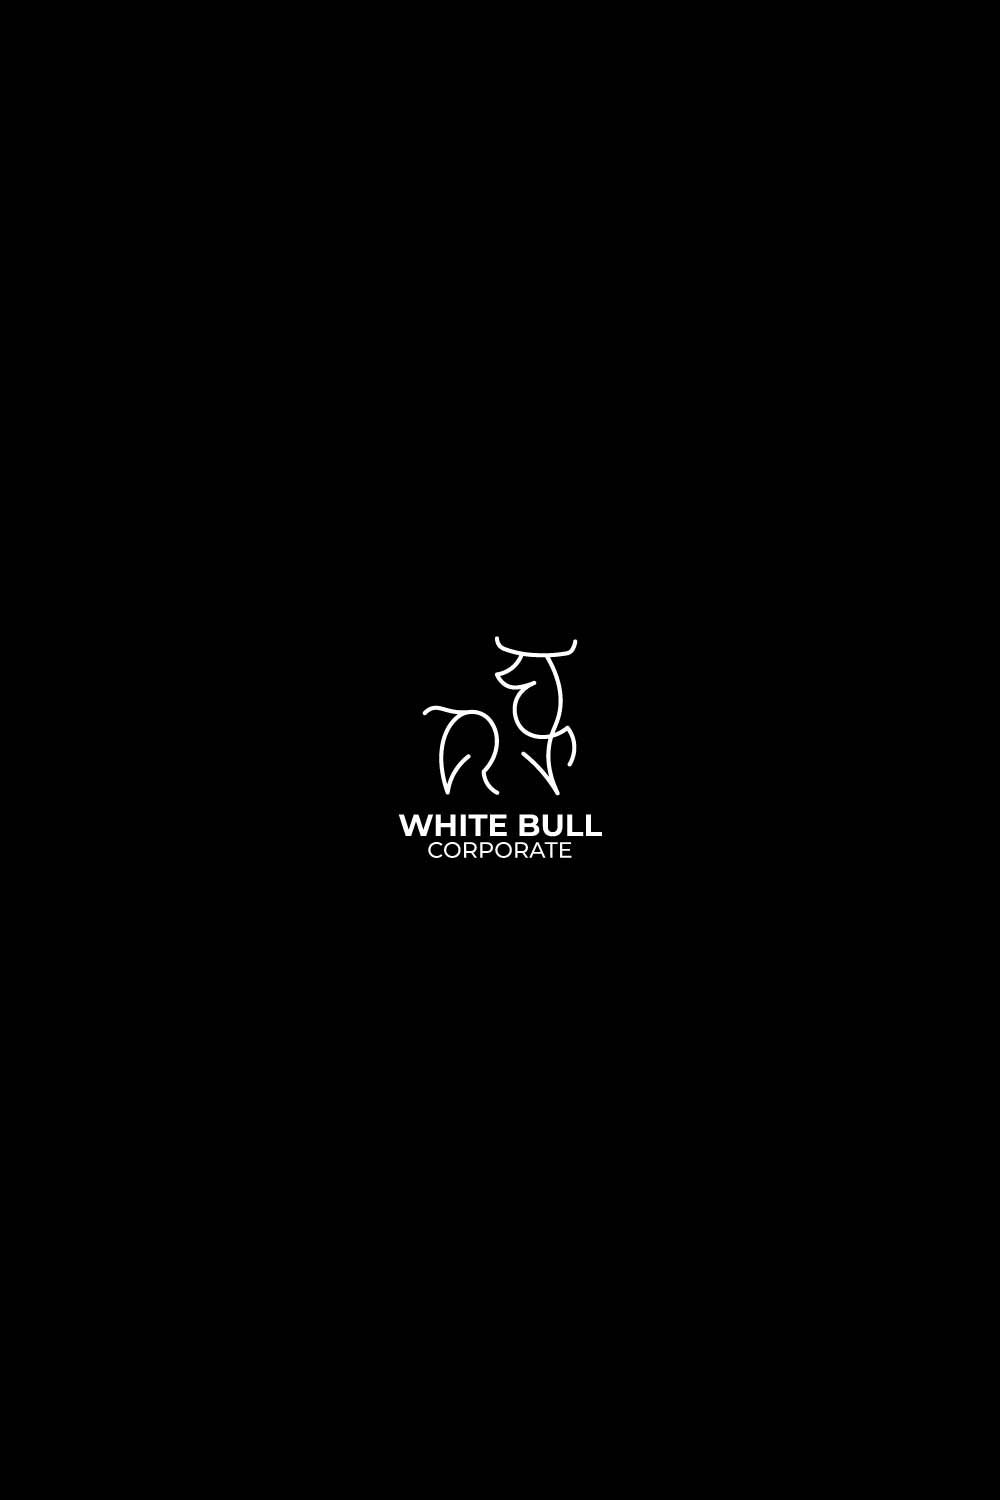 White bull logo vector design pinterest preview image.